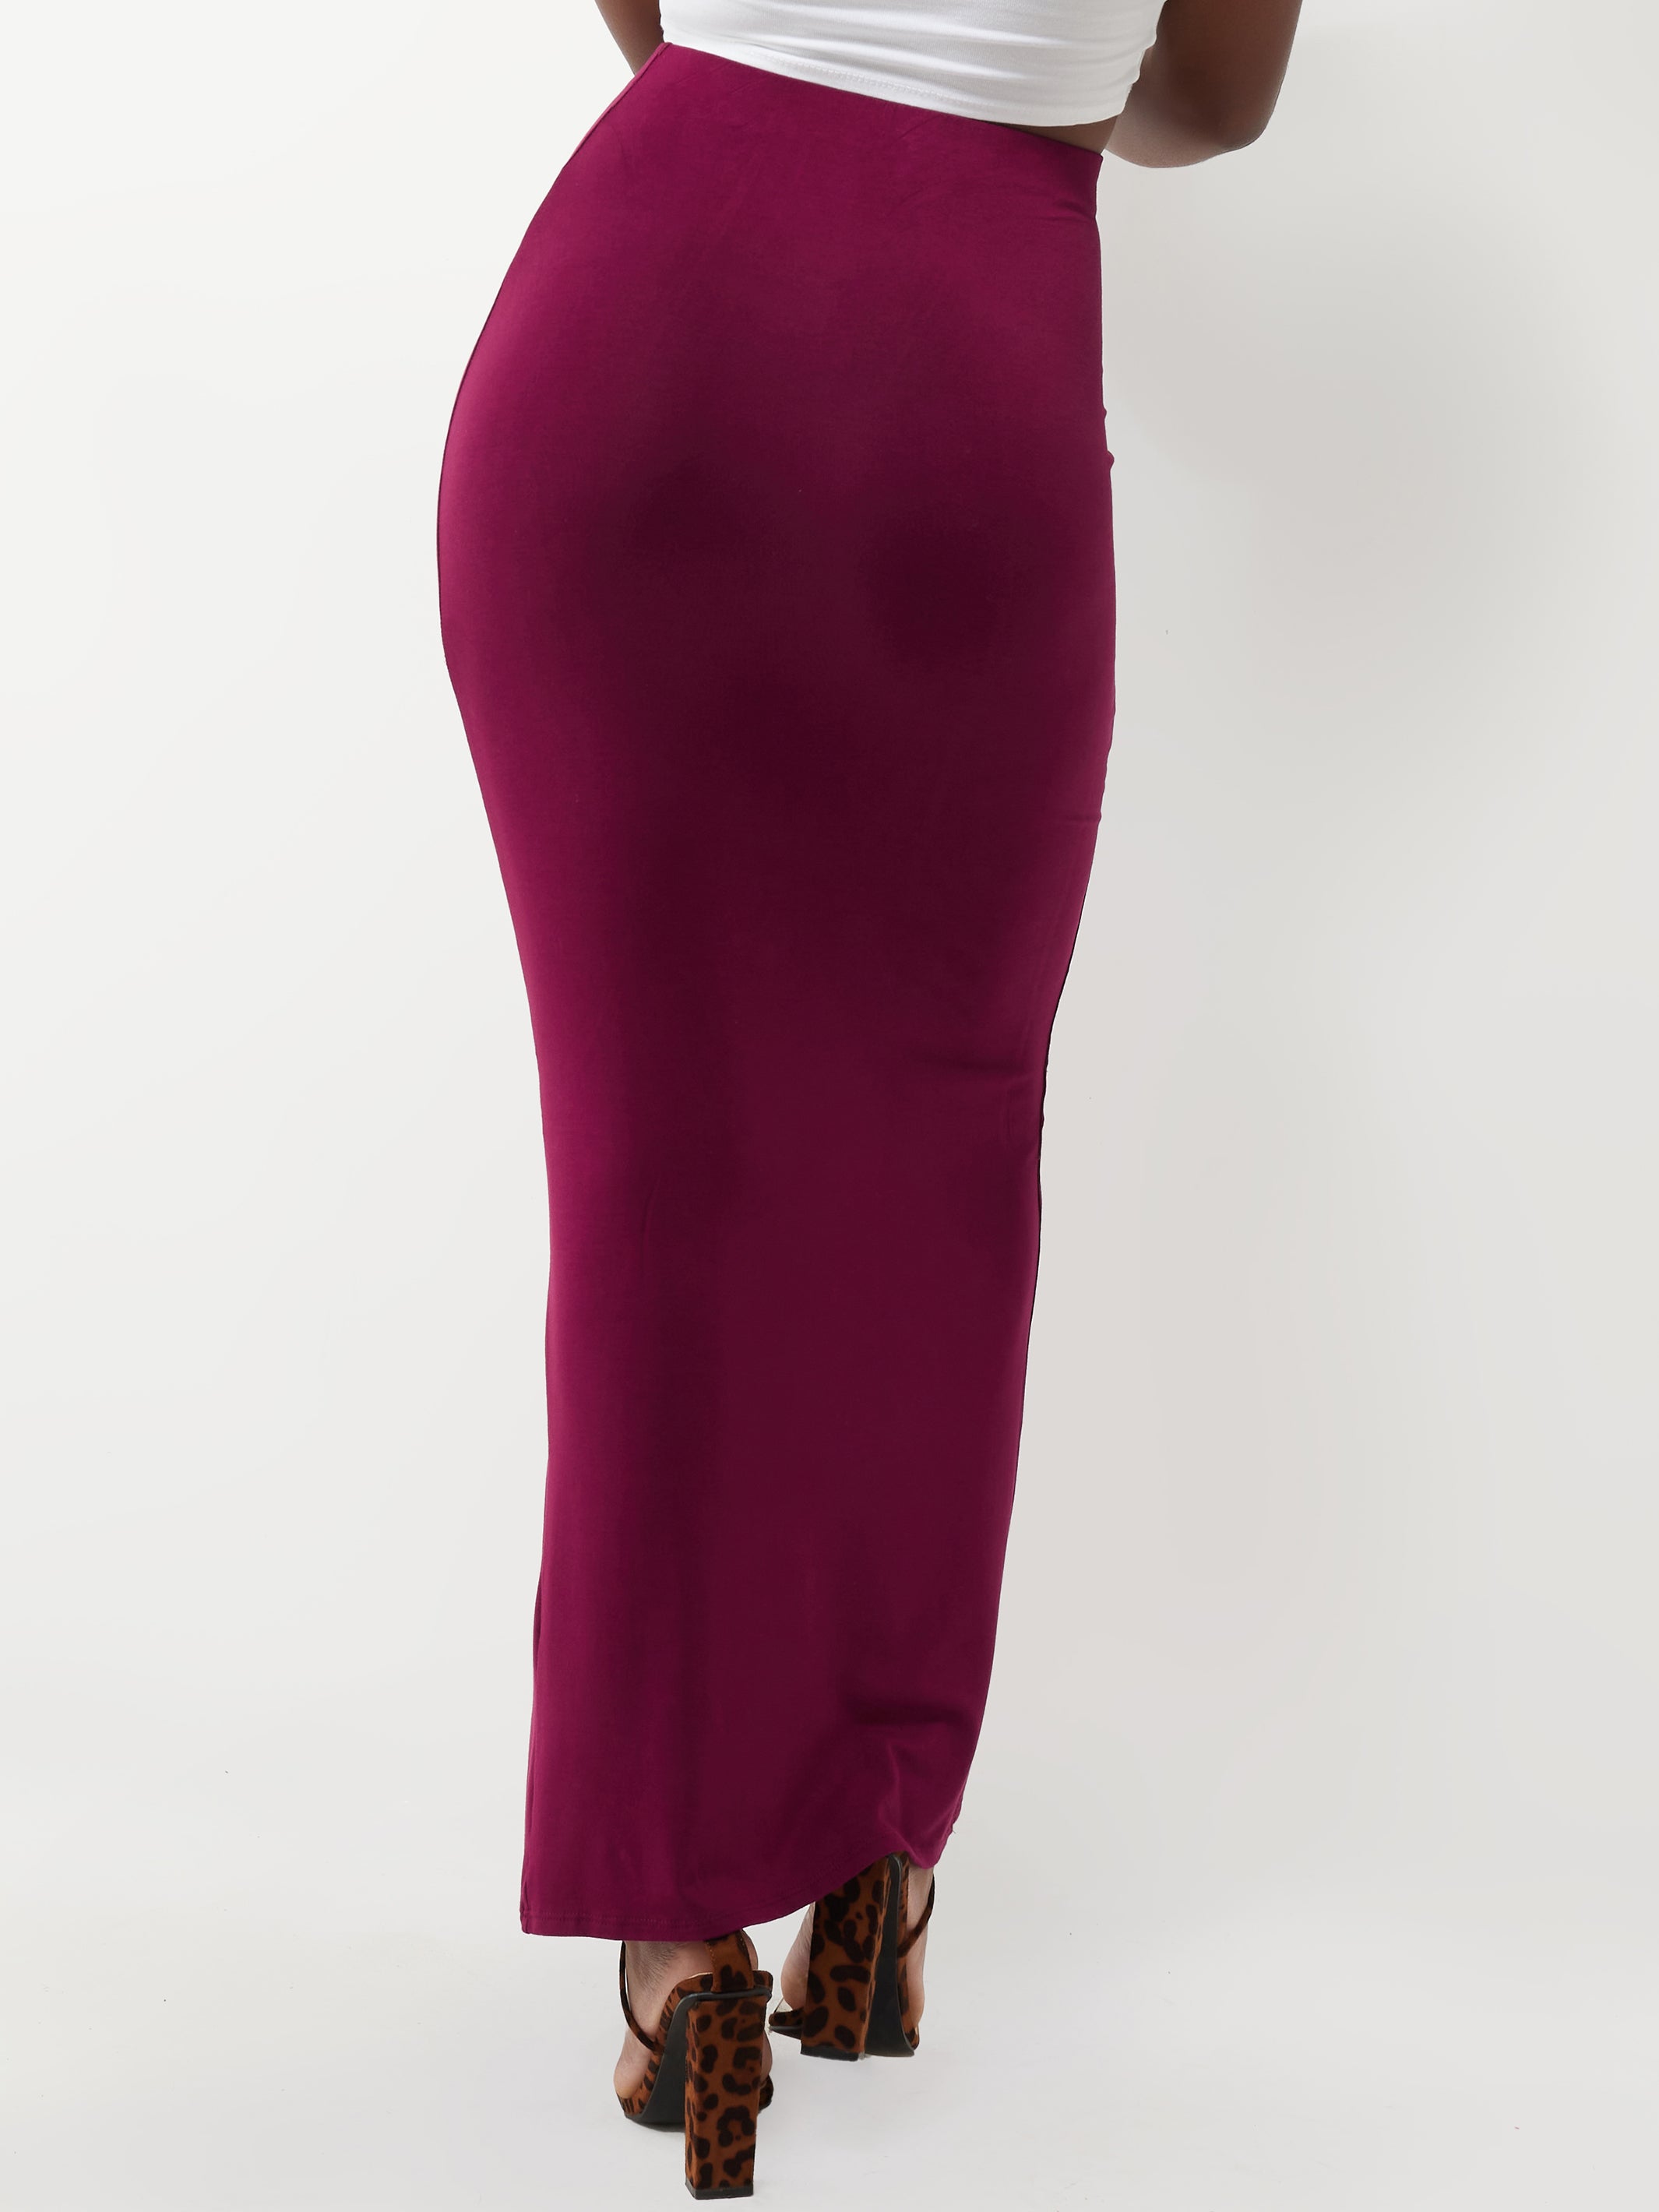 Vivo Basic Straight Skirt With Front Slit - Burgundy